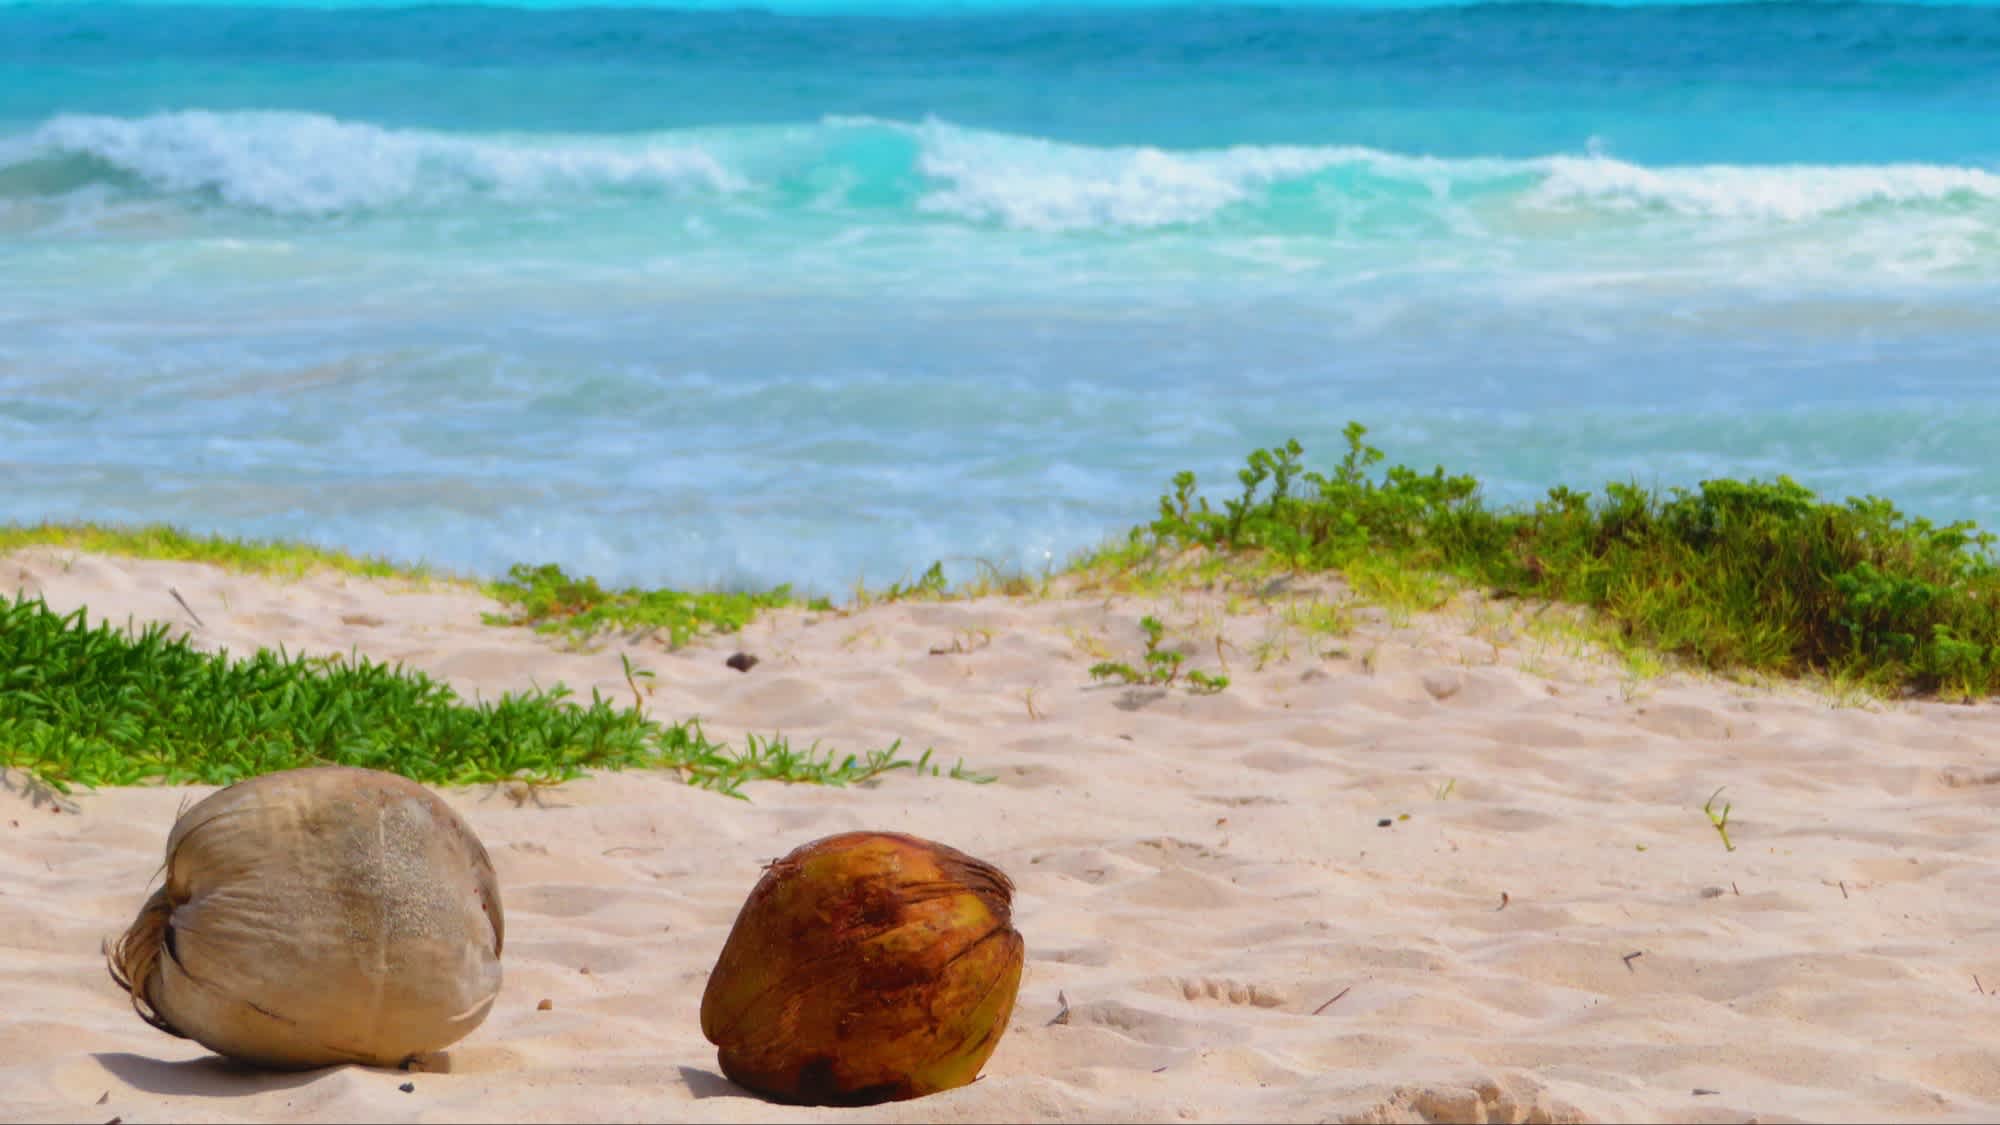 Kokosnüsse übersäen die Sanddünen des Xpu-Ha-Strandes an der Riviera Maya, Mexiko, bei Sonnenschein und mit Blick auf das Meer.